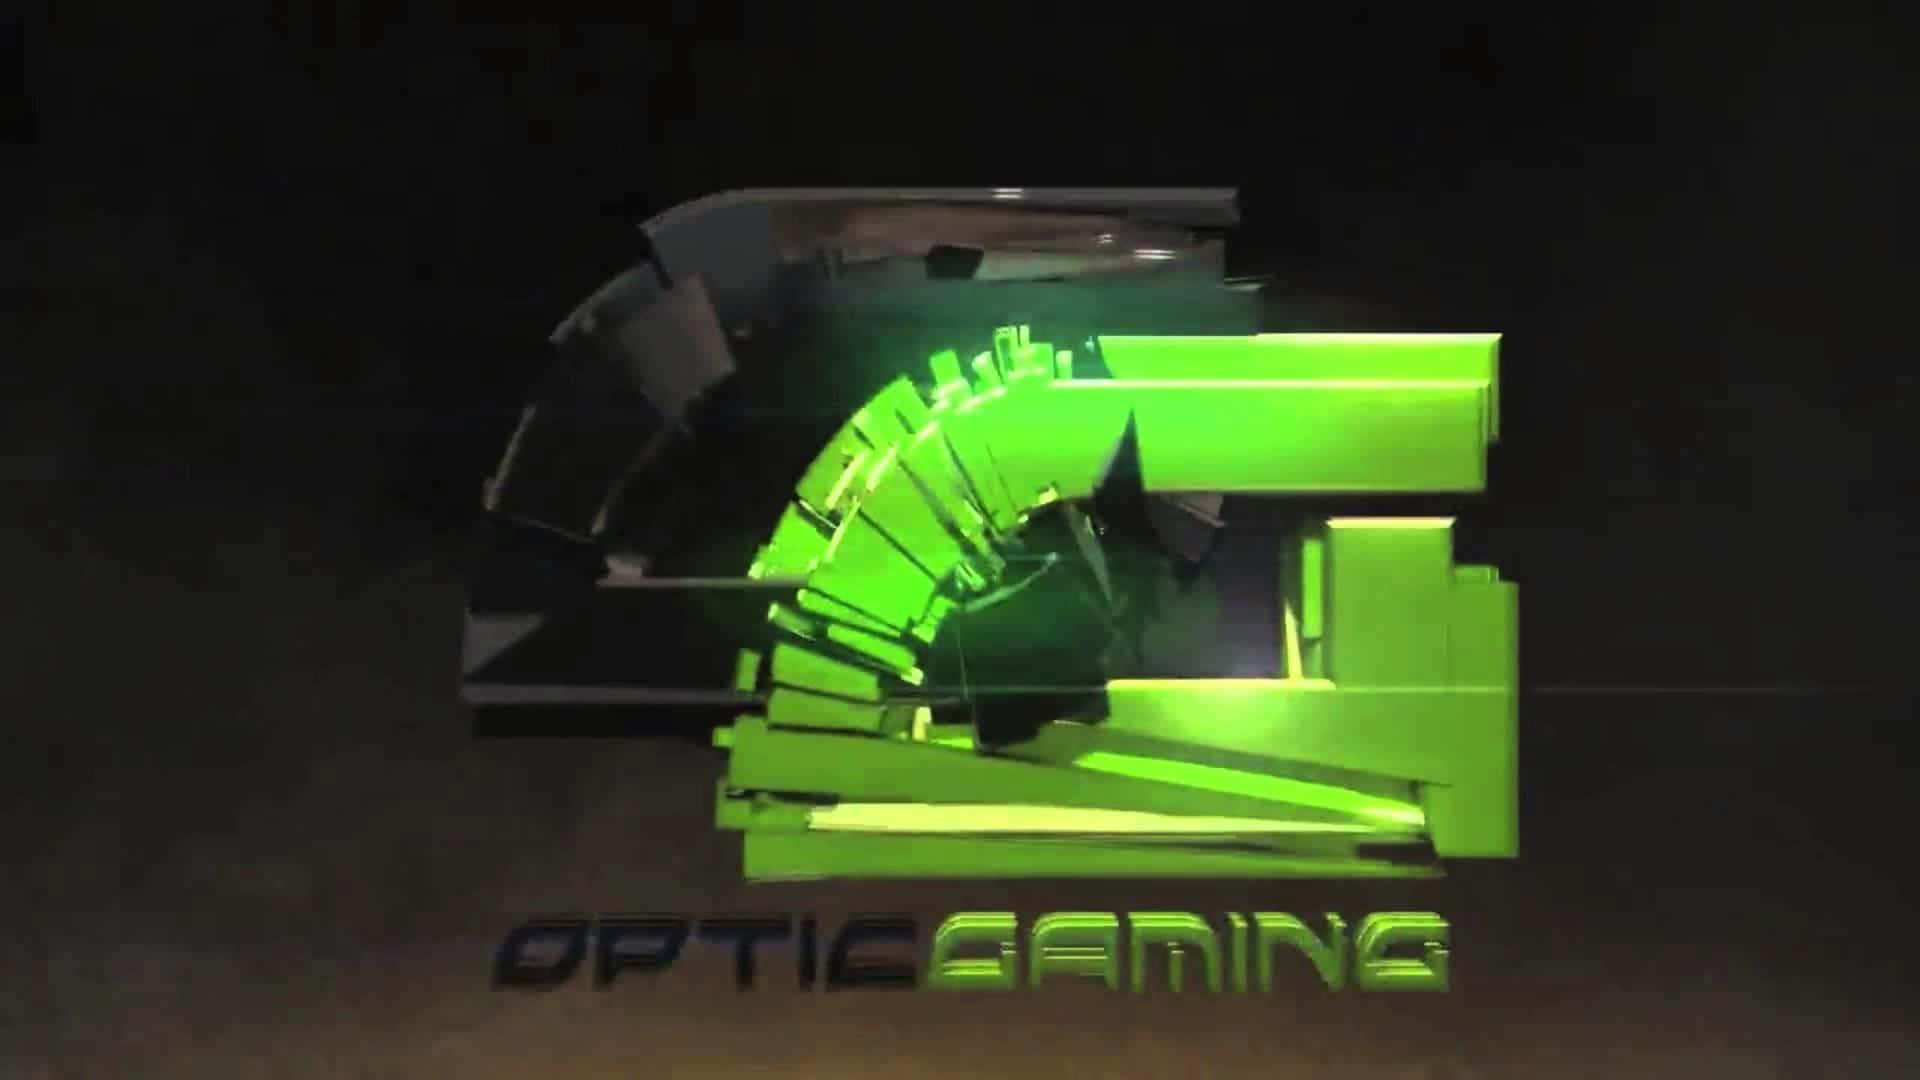 Optic Gaming Logo3 D Rendering Wallpaper